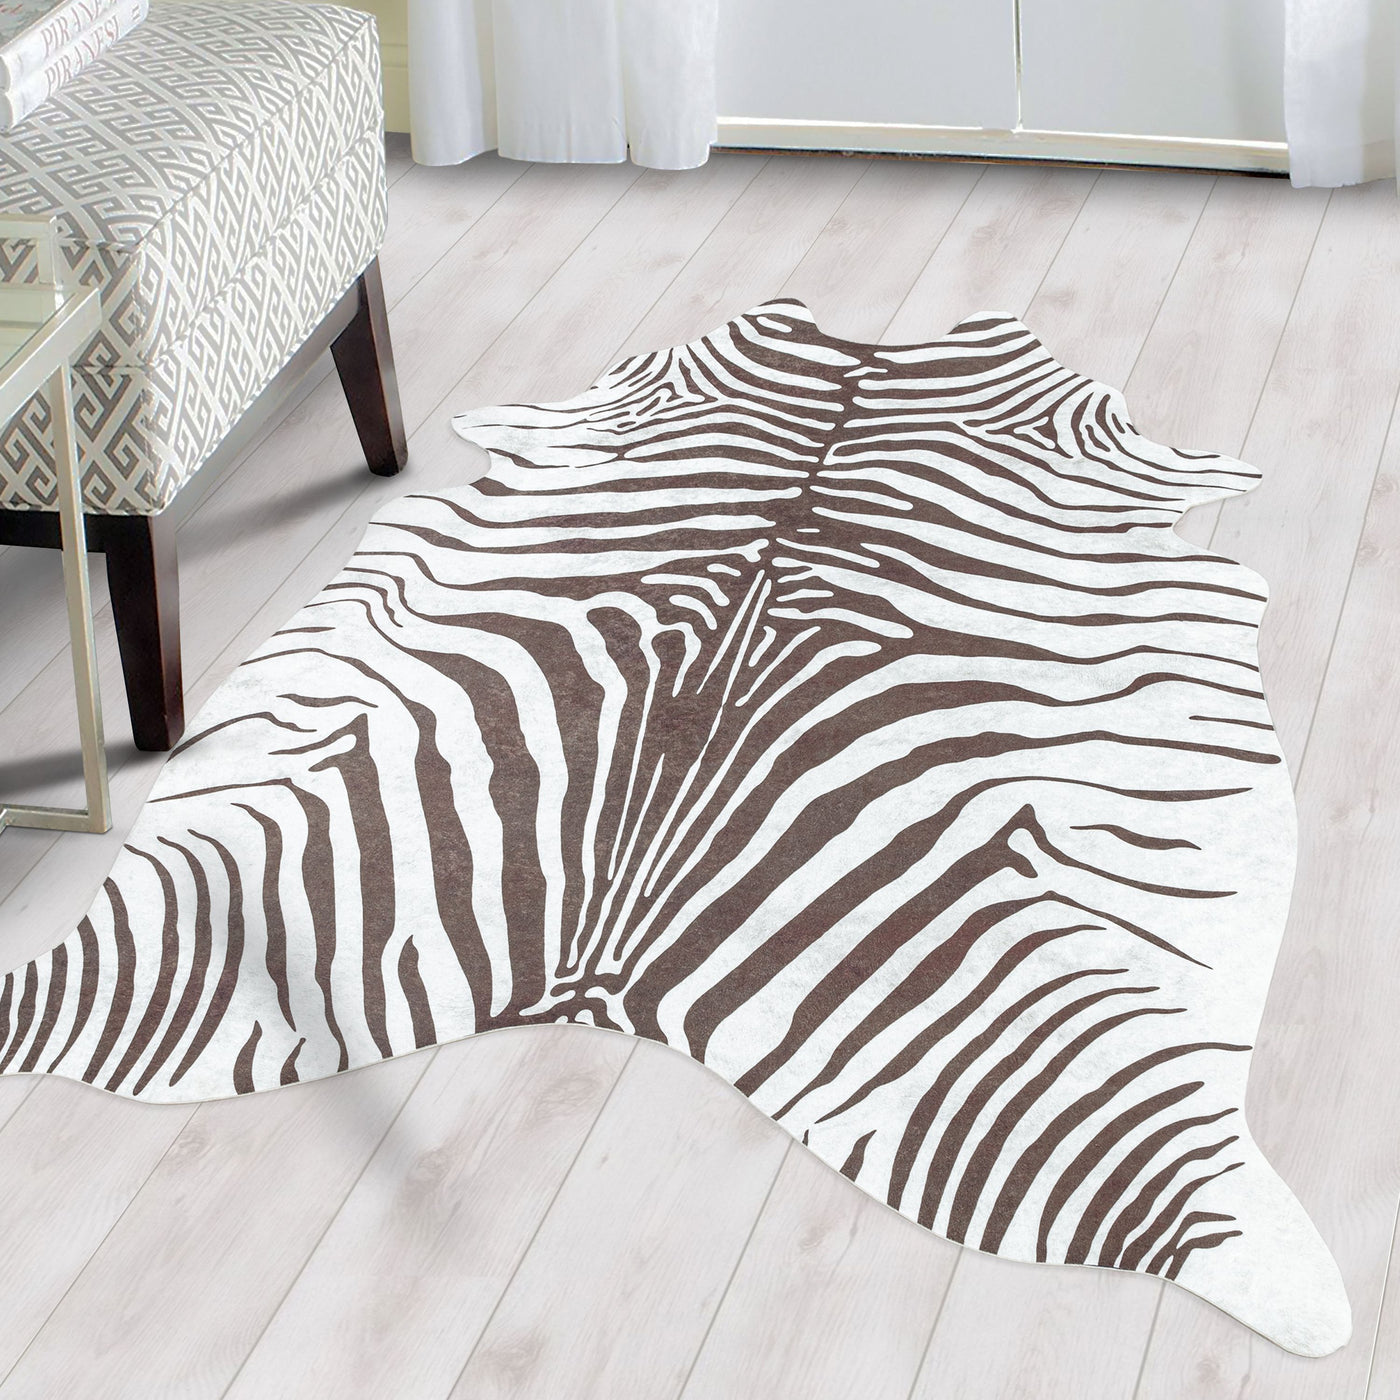 Teppich Waschbar Flachgewebe Wohnzimmerteppich Robust Zebra Fell Motiv Braun